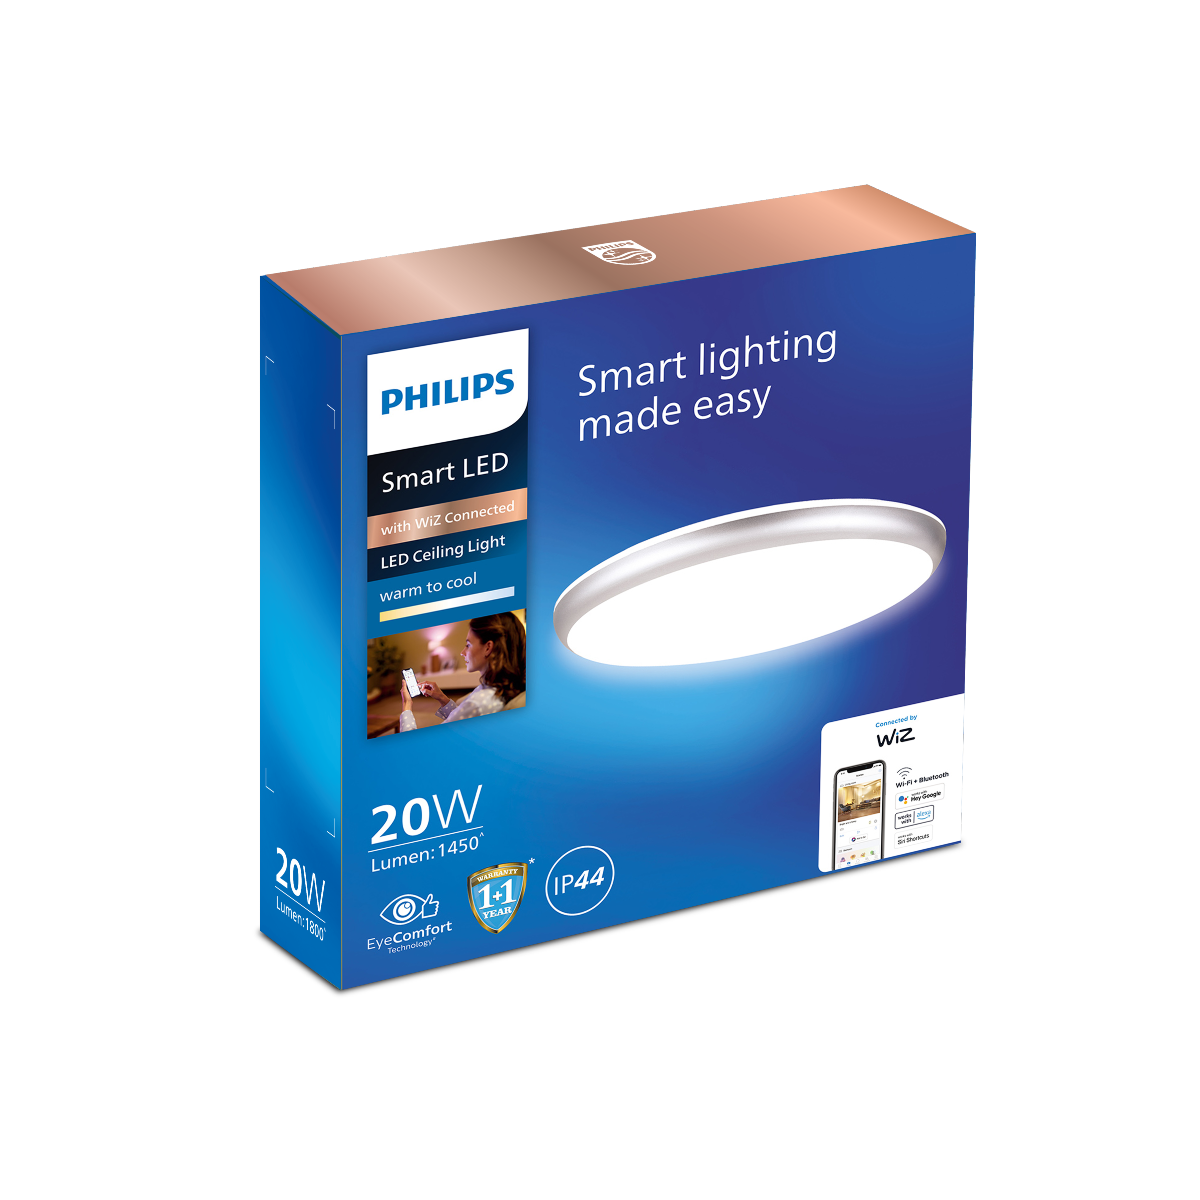 Philips Smart WiFi LED Ceiling light